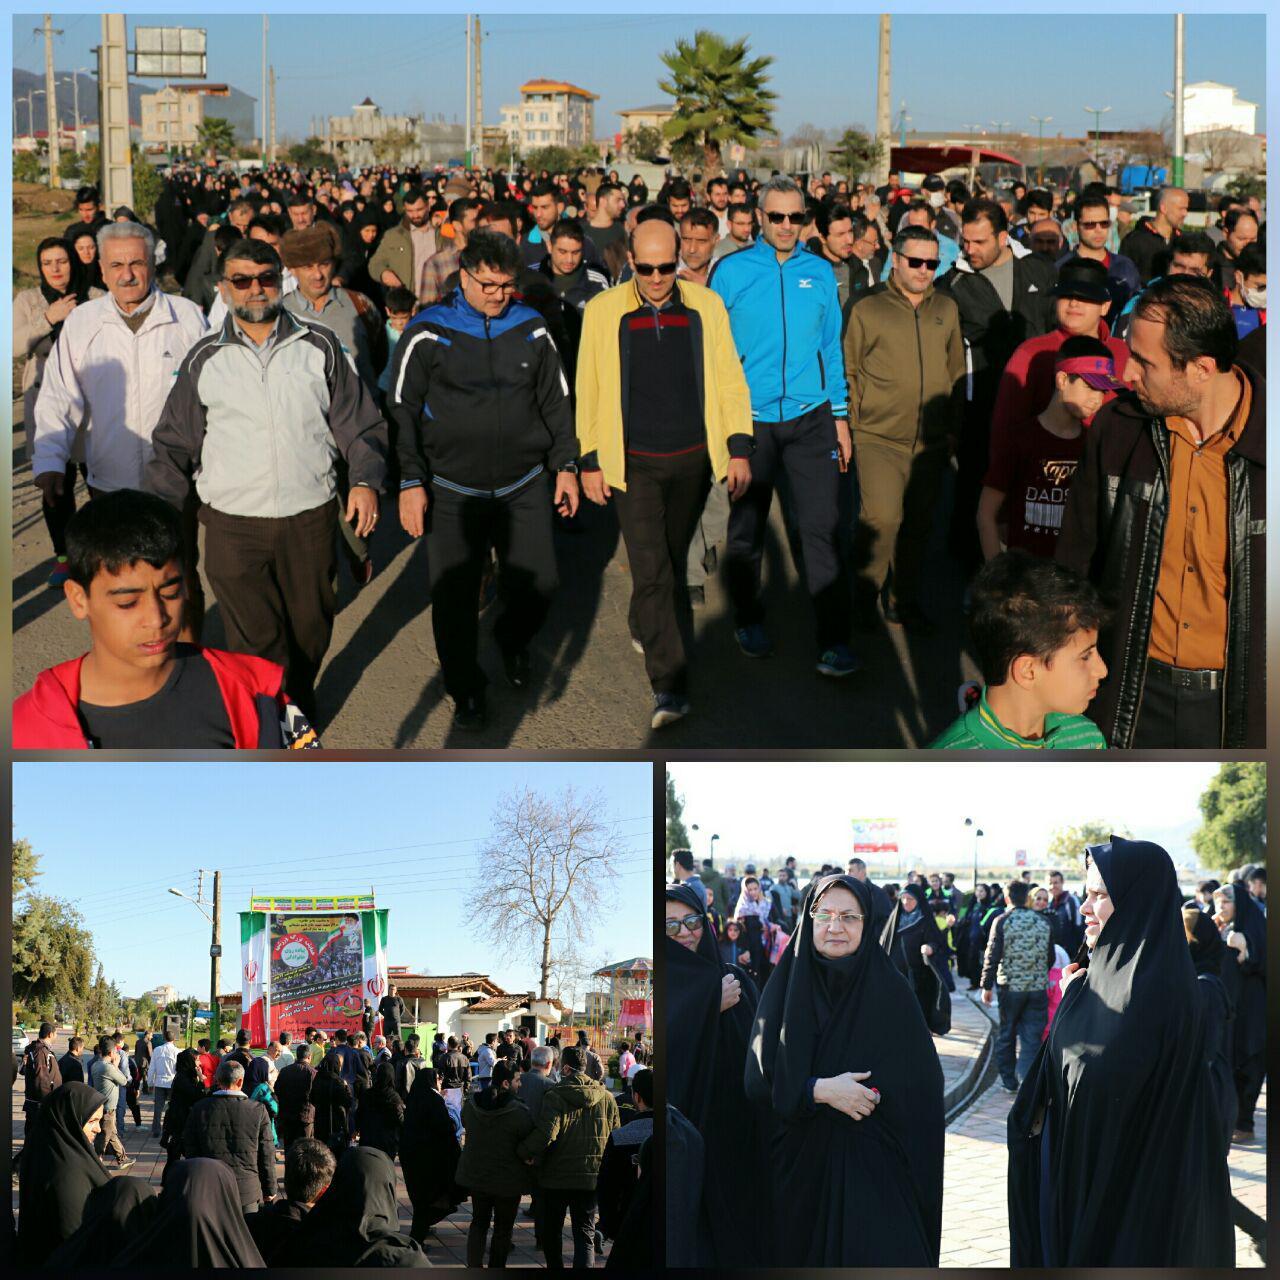 برنامه های متنوع شهرداری در دهه فجر / برگزاری همایش پیاده روی خانوادگی با همت شهرداری و شورای اسلامی شهر